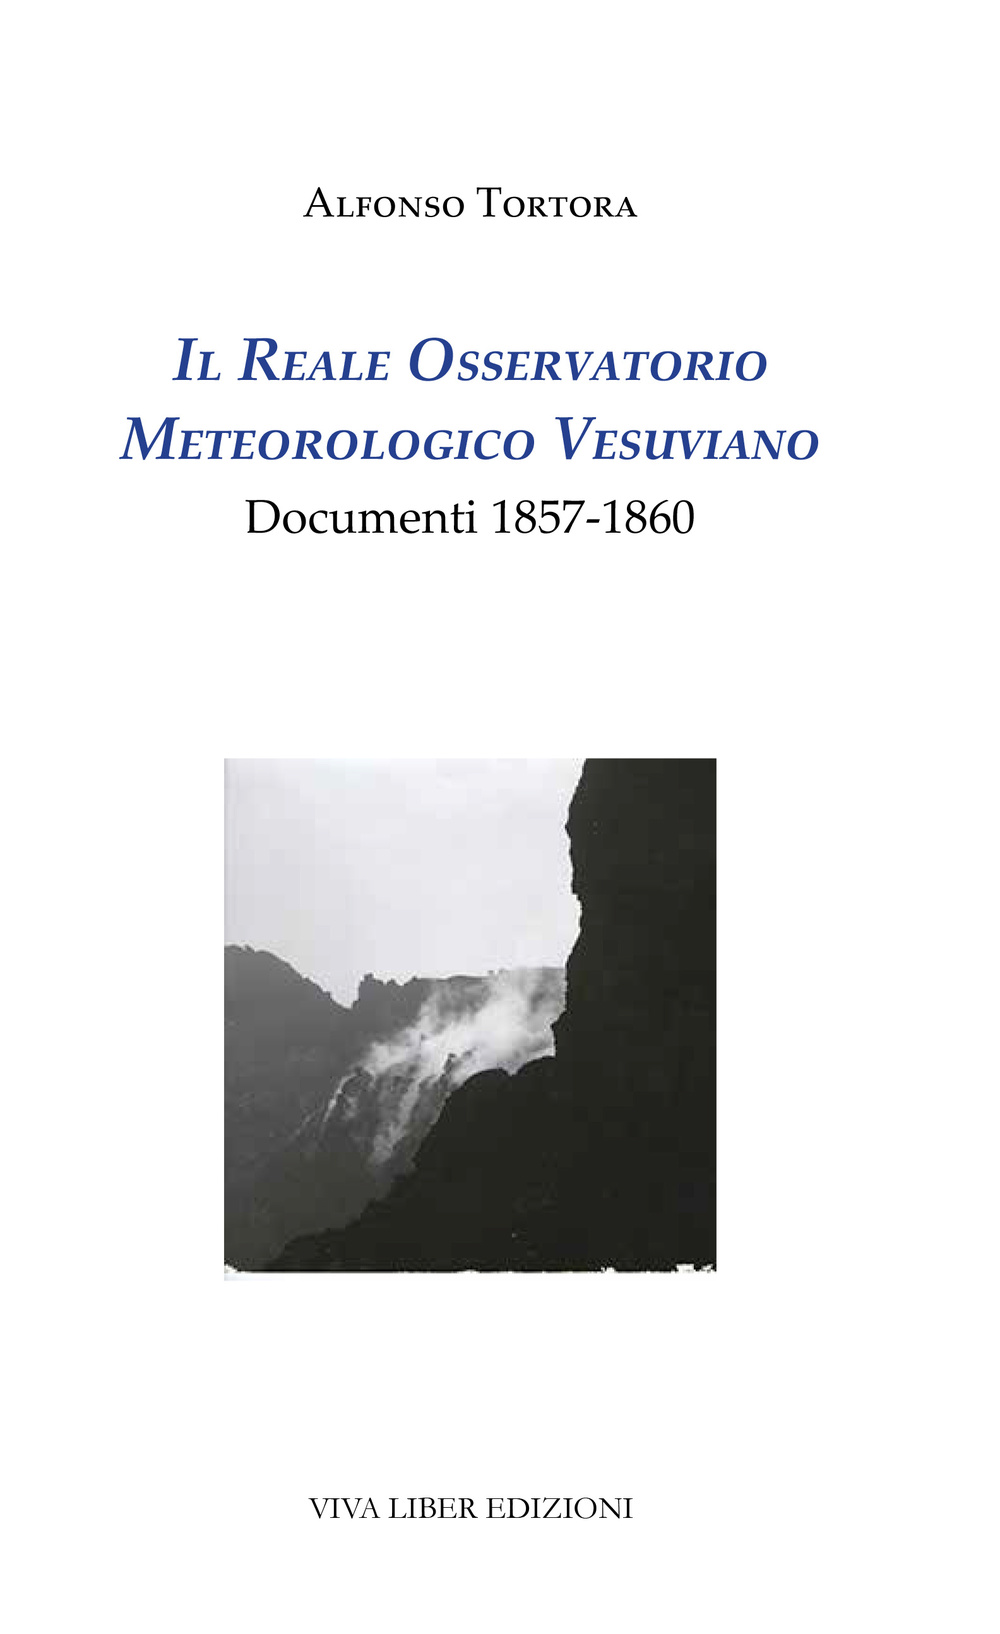 Il Reale Osservatorio meteorologico vesuviano. Documenti 1857-1860